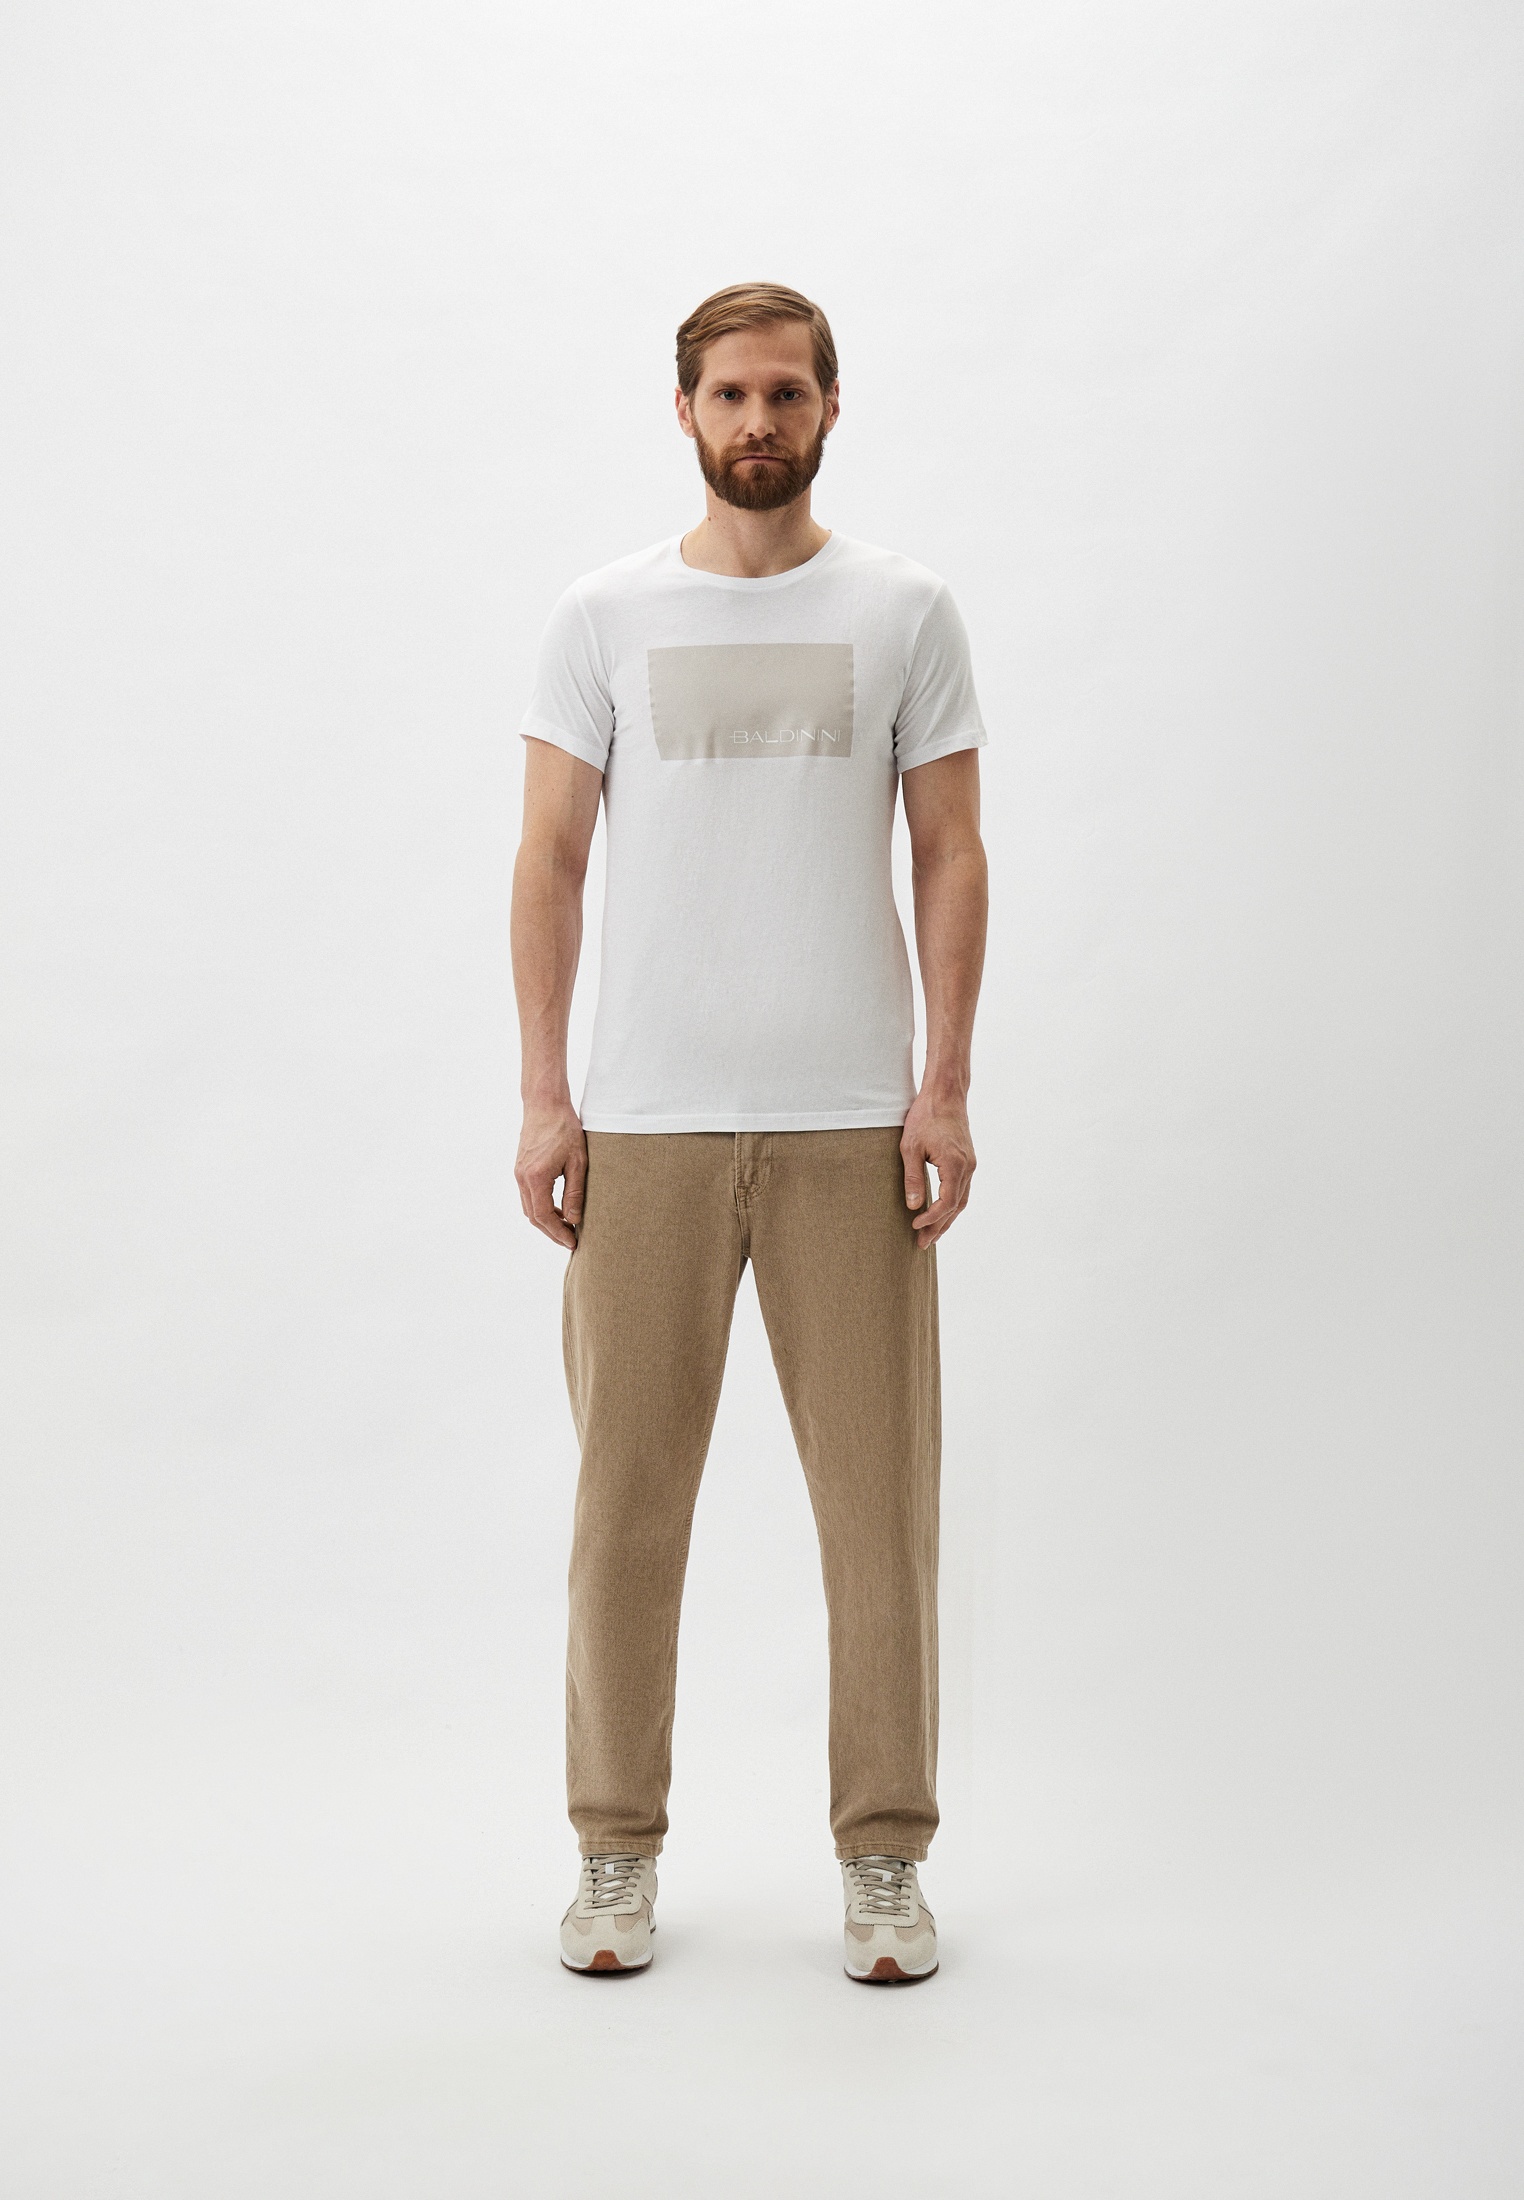 Мужская футболка Baldinini (Балдинини) B-OLM-M014: изображение 2